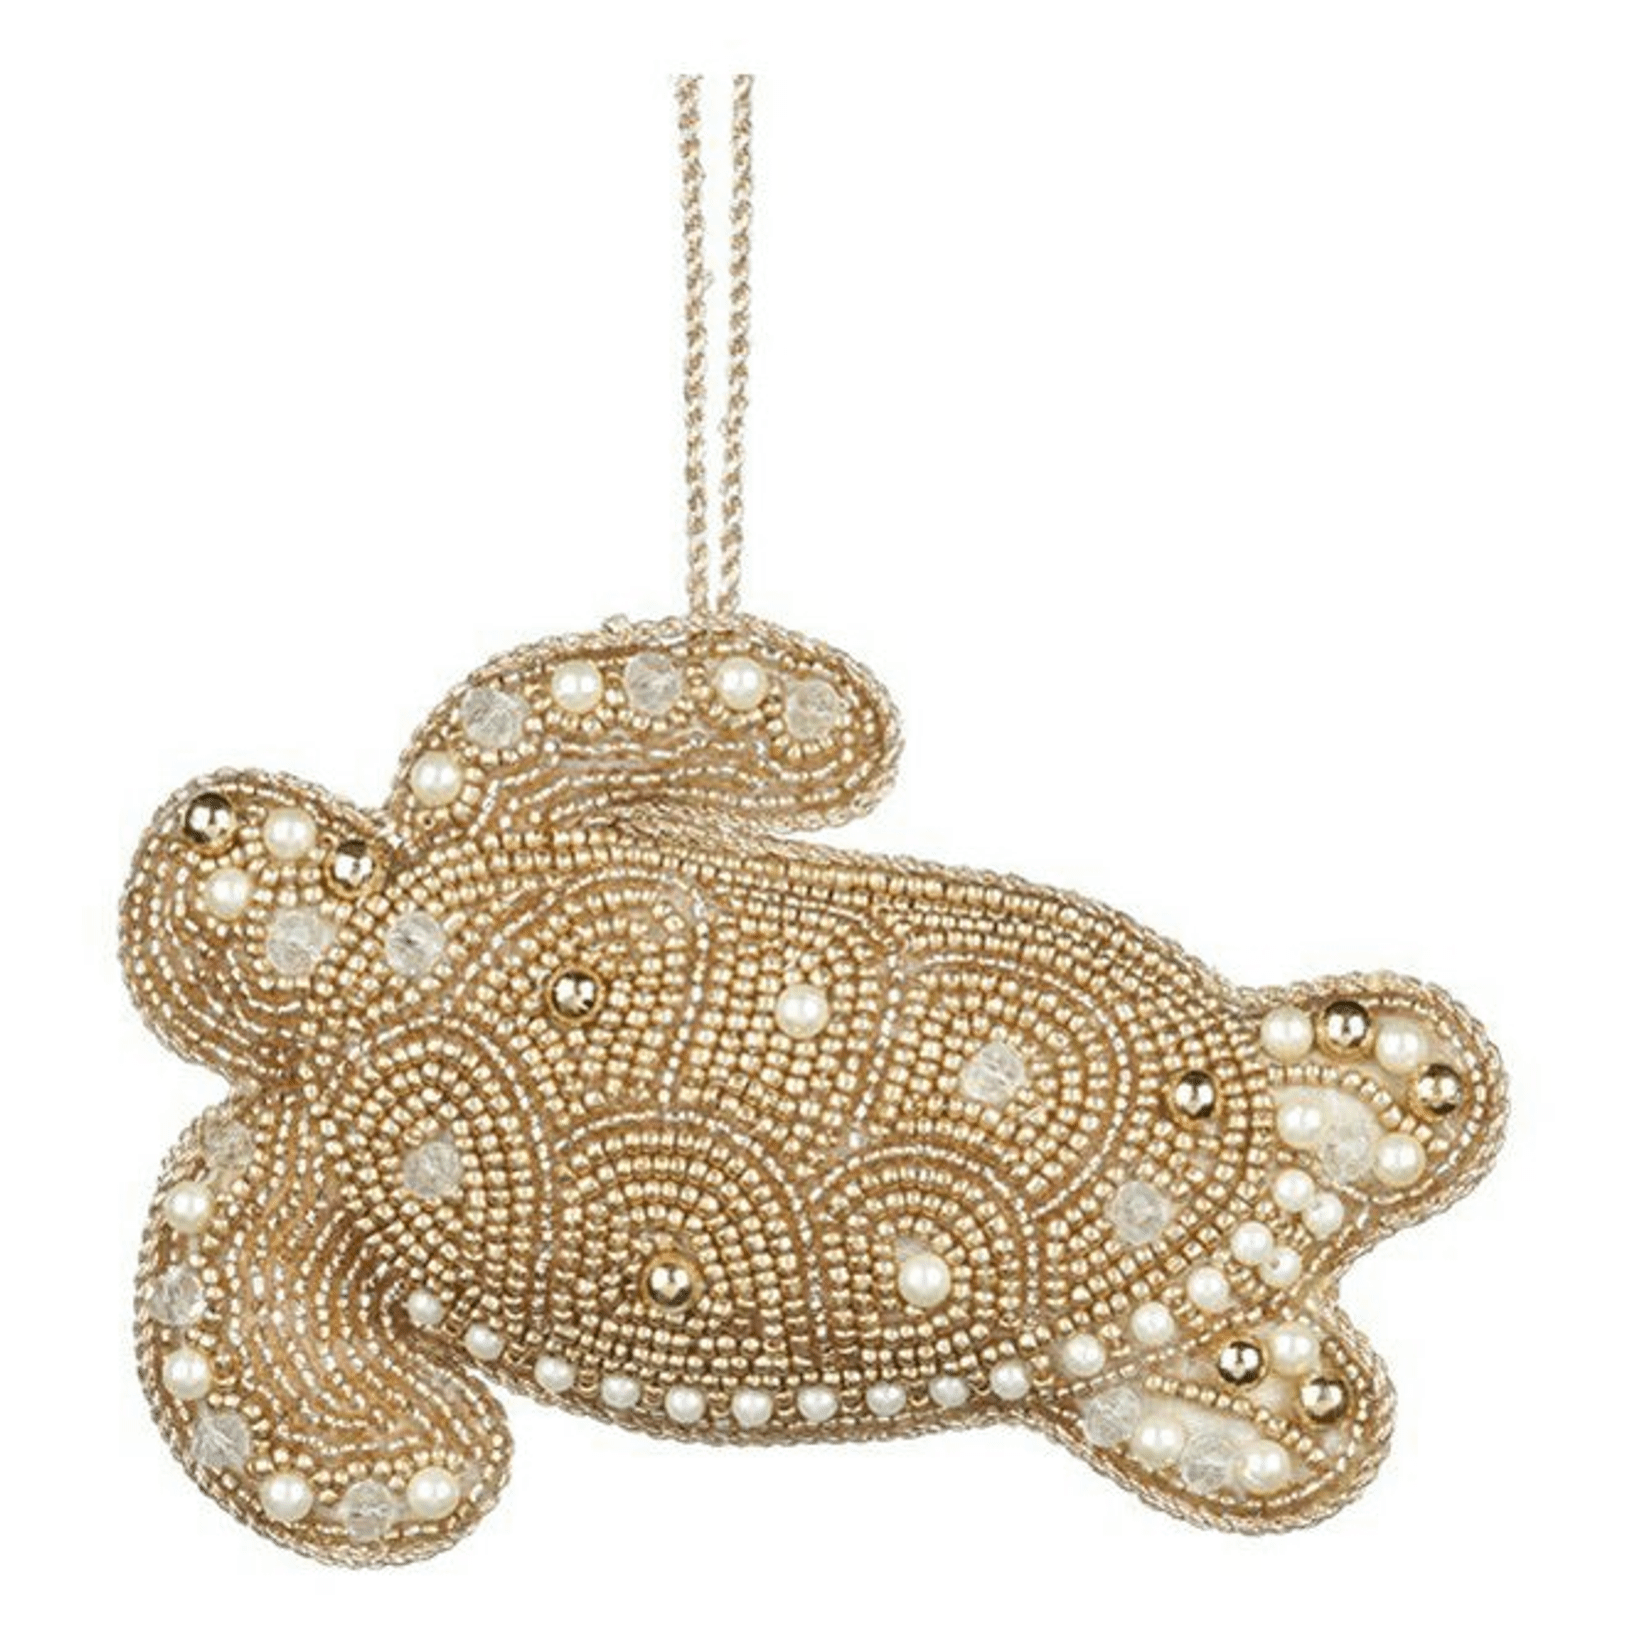 Новогоднее украшение Goodwill Черепаха 13 см золото 1 шт.